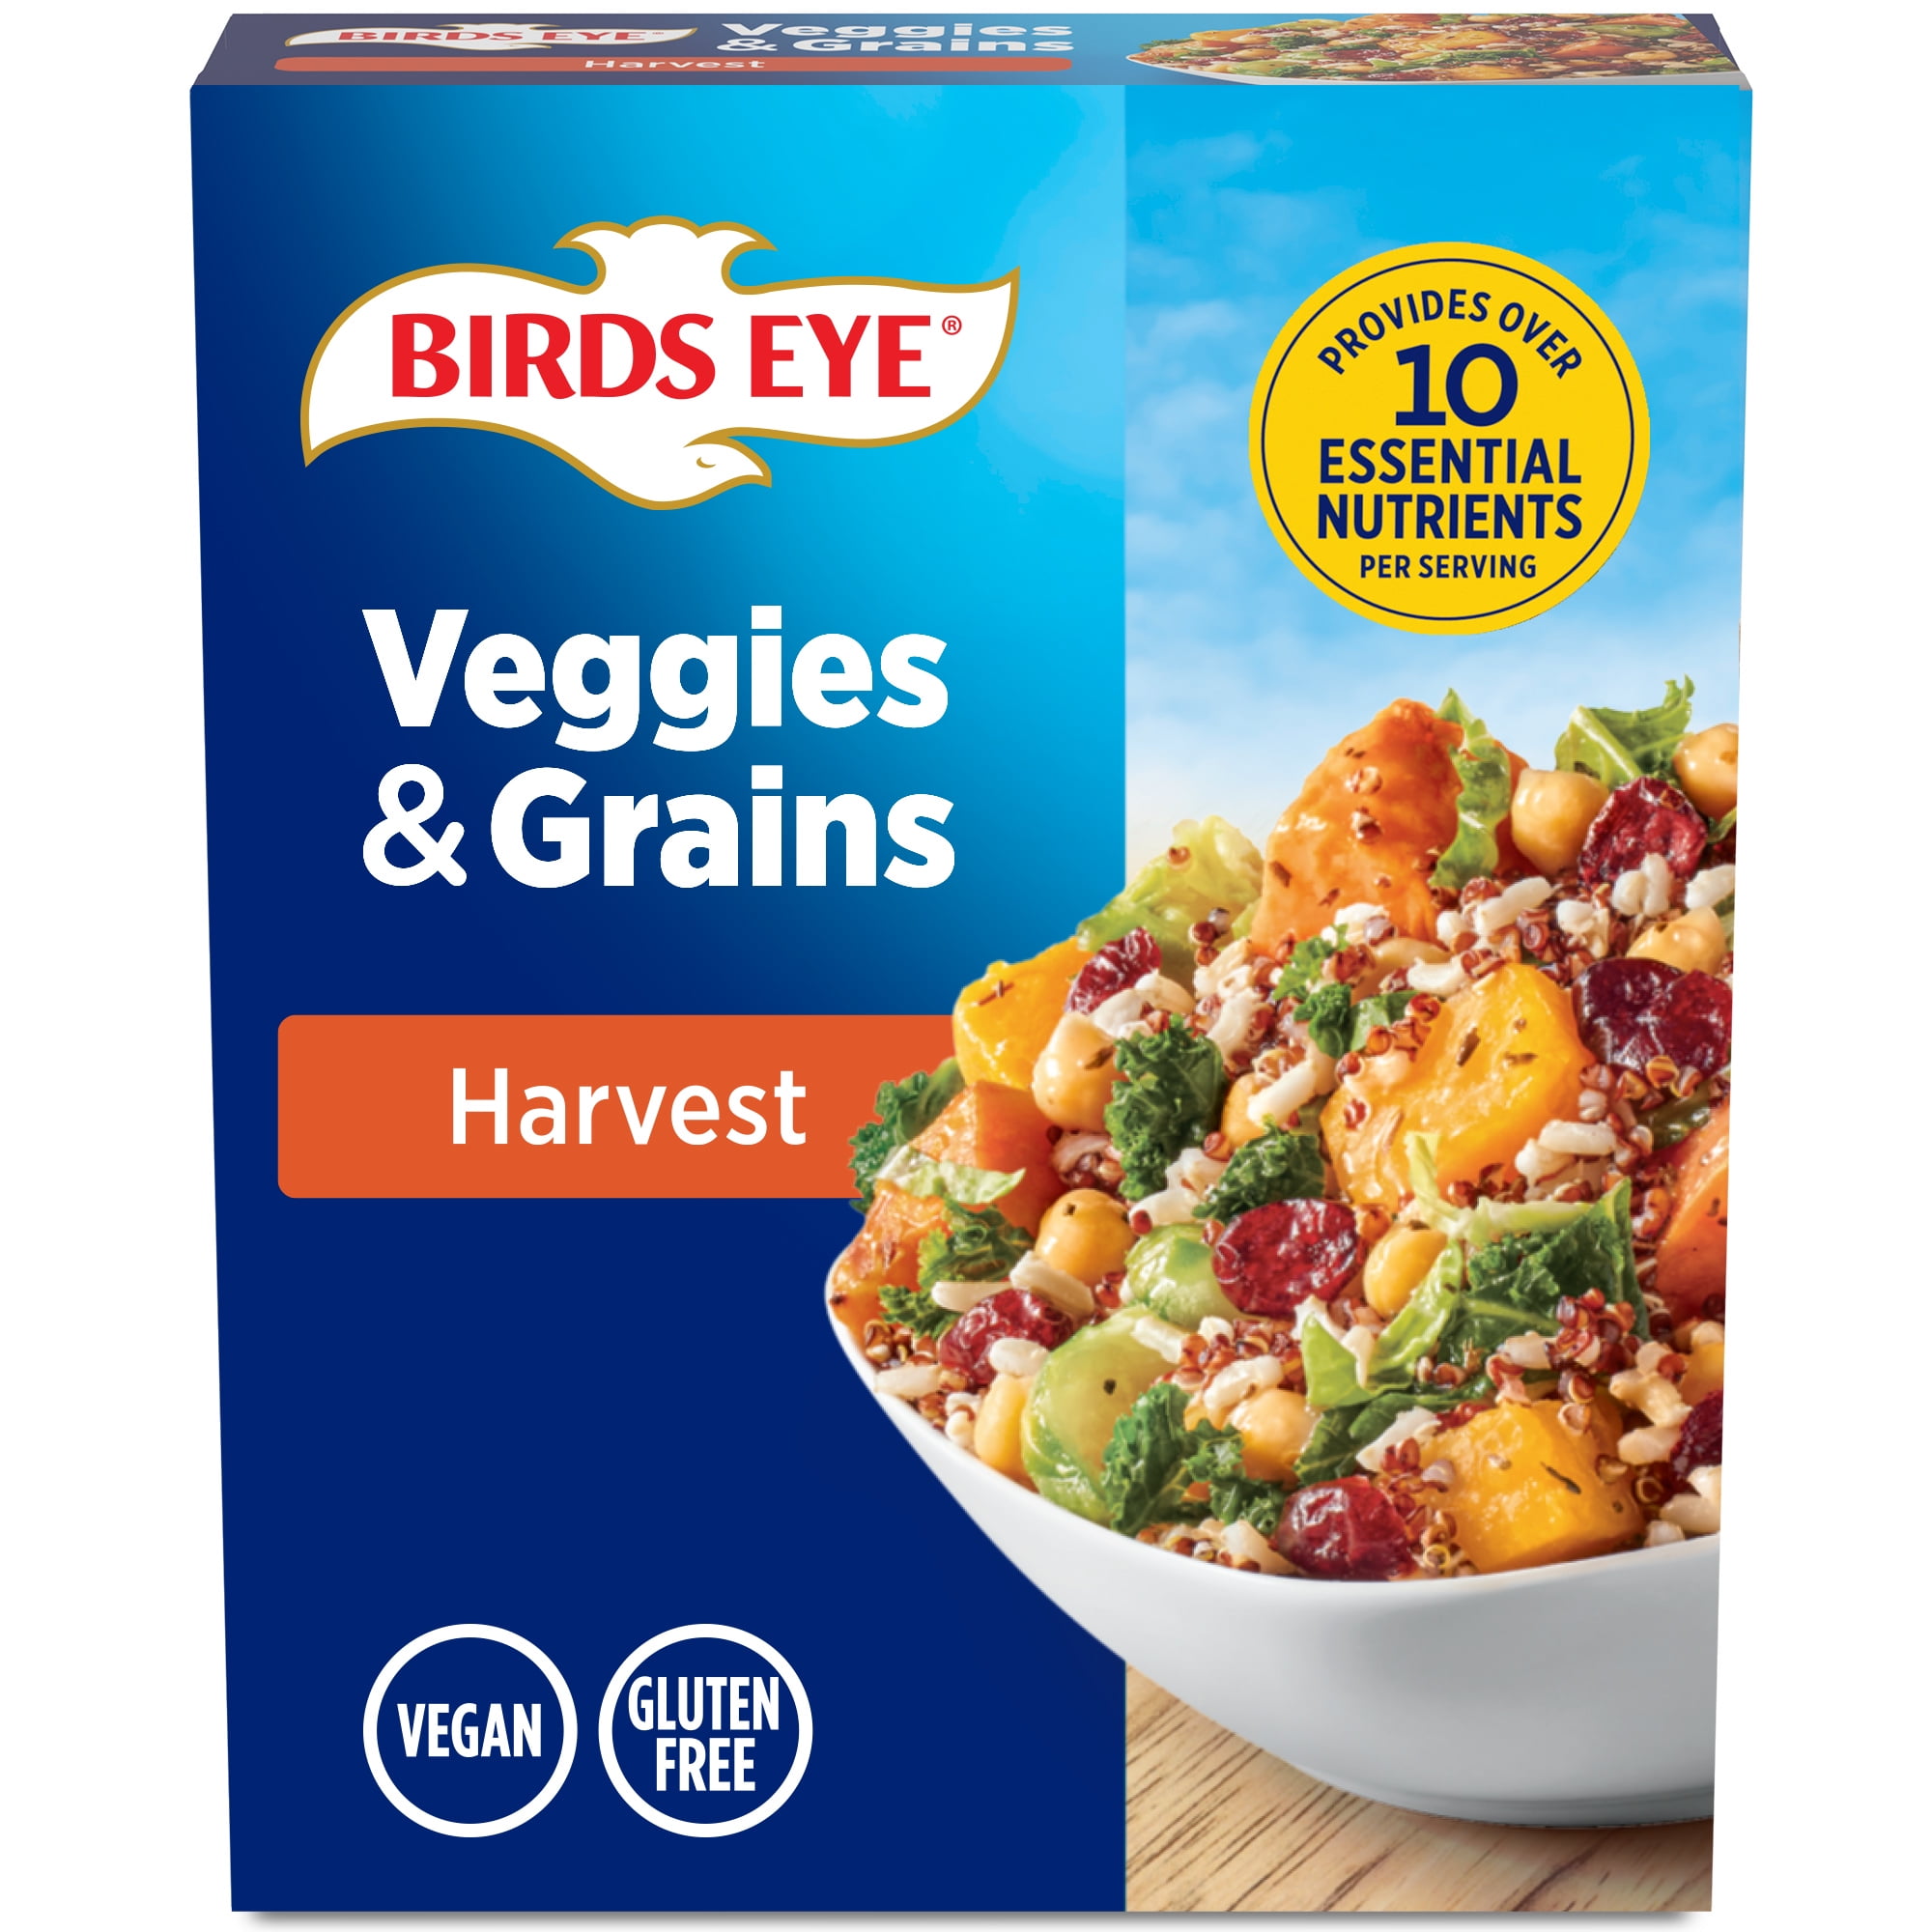 Birds Eye Veggies & Grains Frozen Vegetable Blend, Harvest, 13 oz.